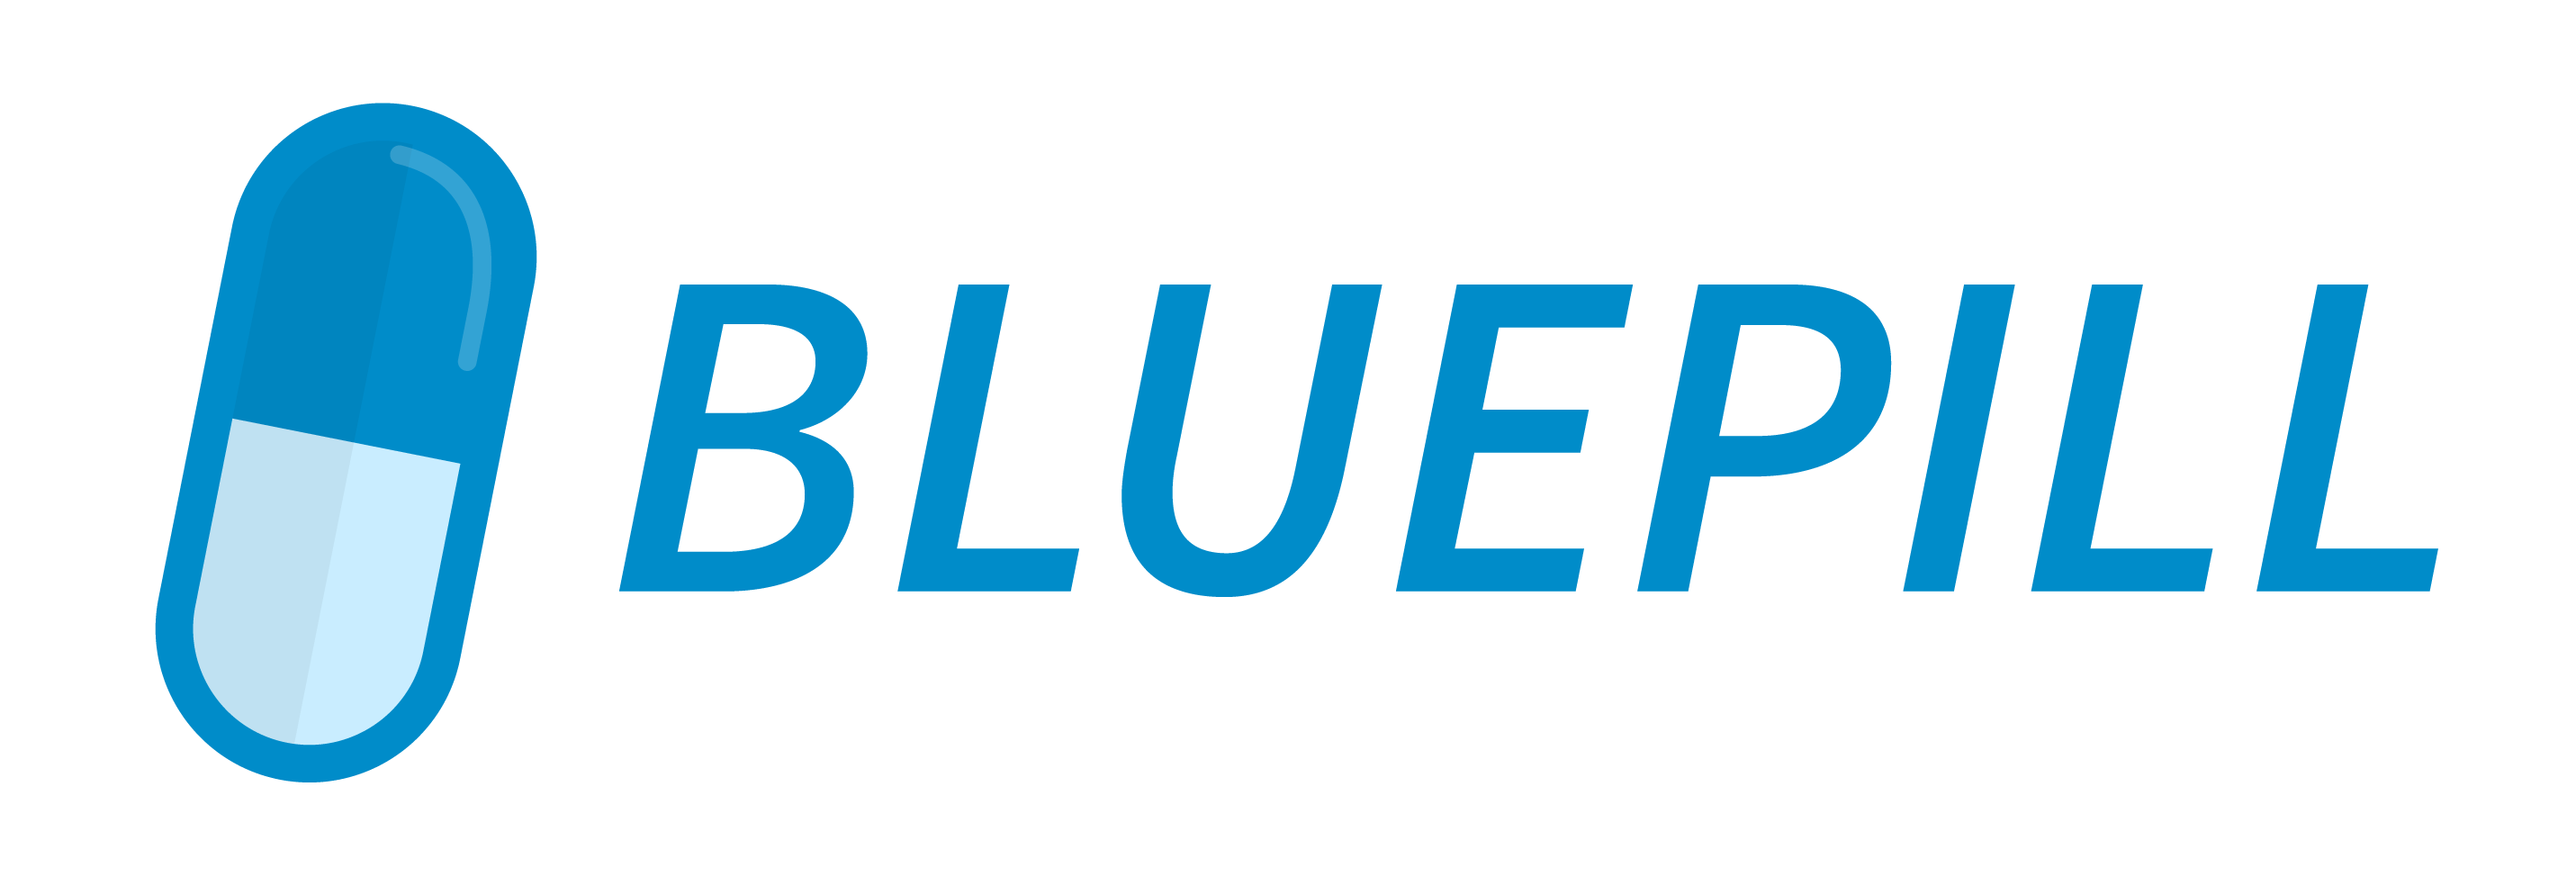 BluepillIcon